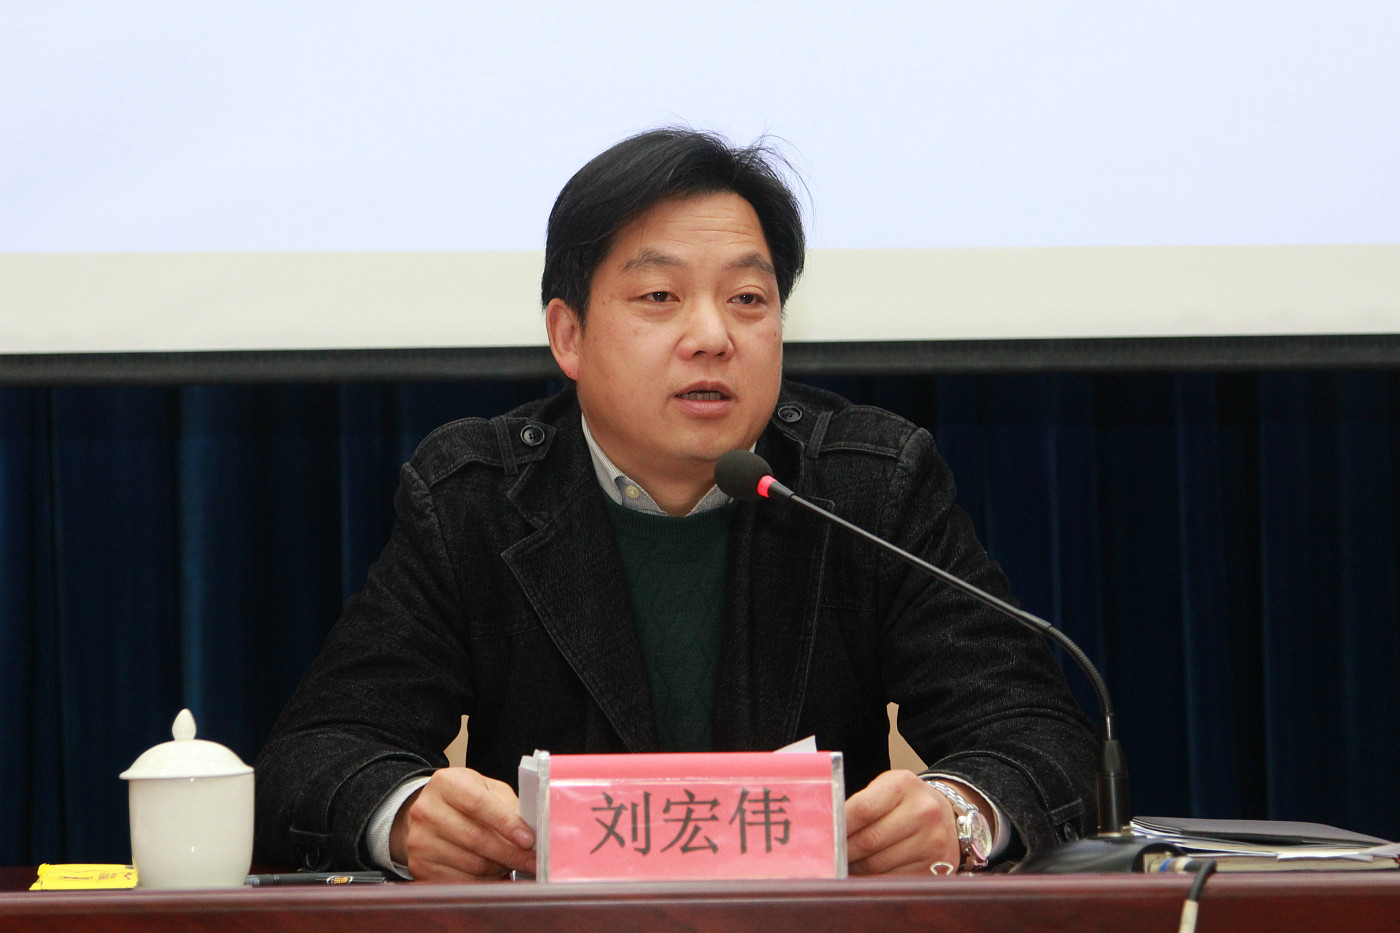 常务副校长刘宏伟做了开学动员报告,他指出,2016年我校在作风建设